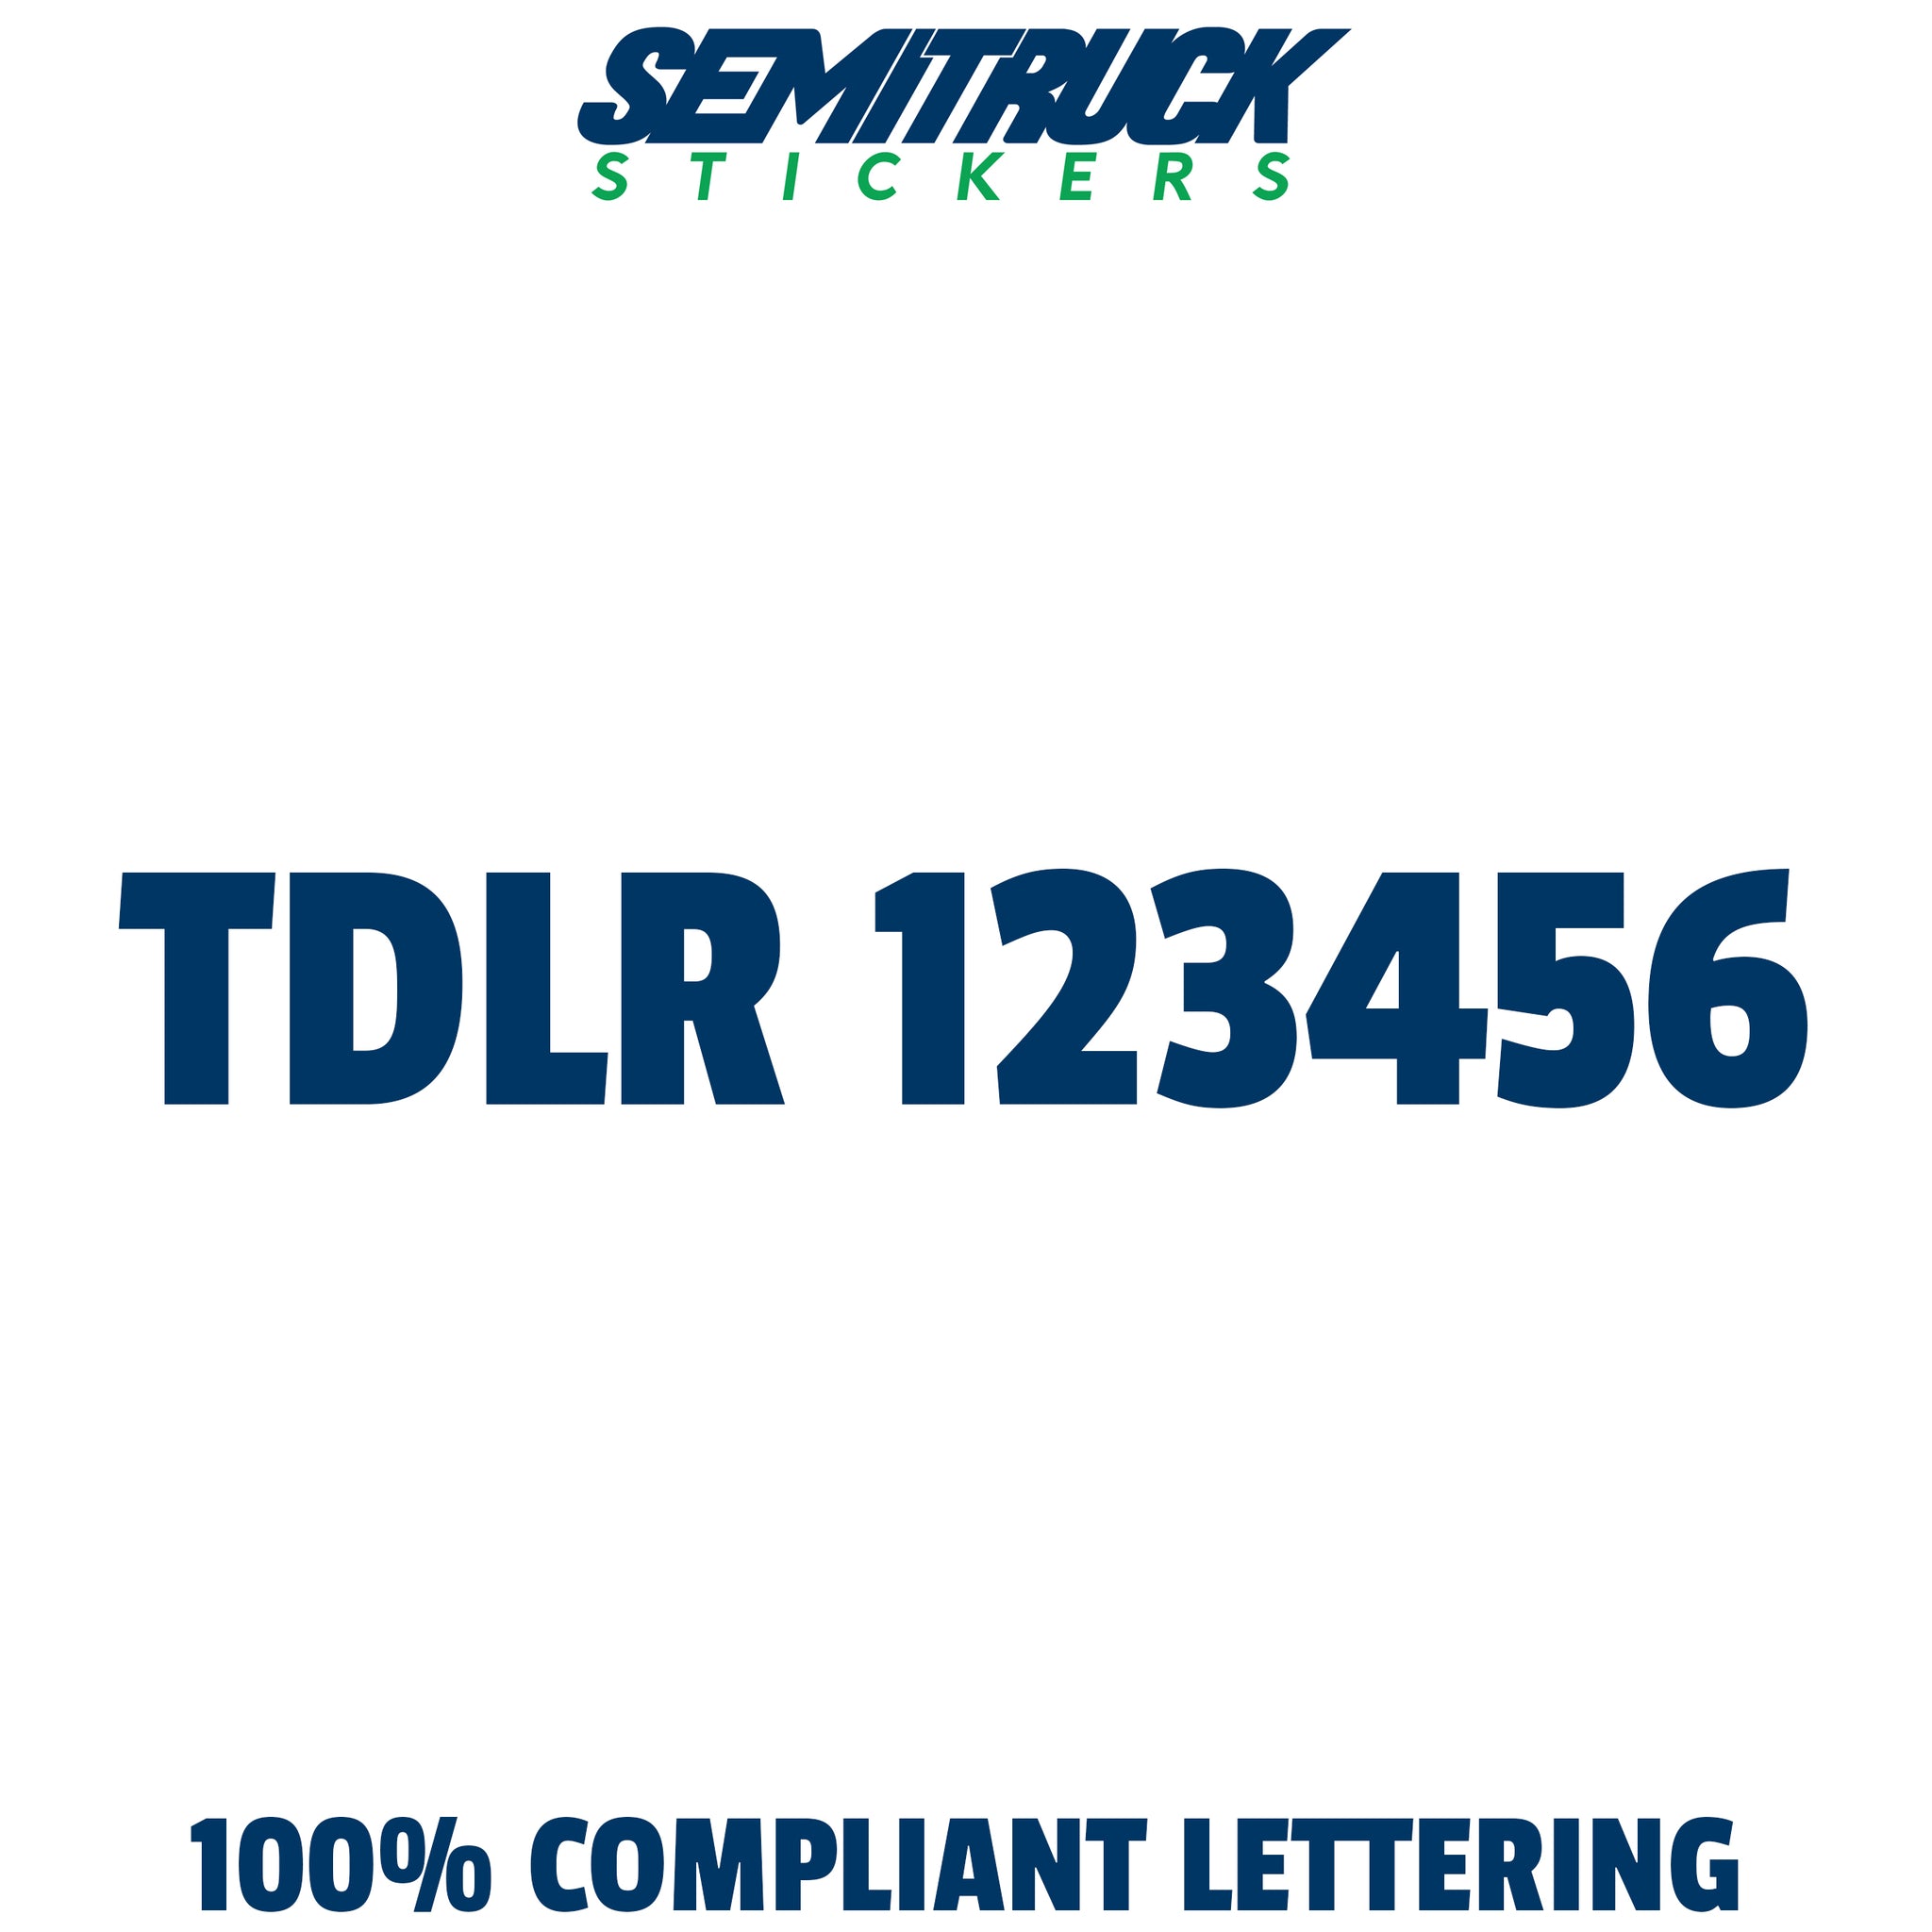 TDLR number sticker